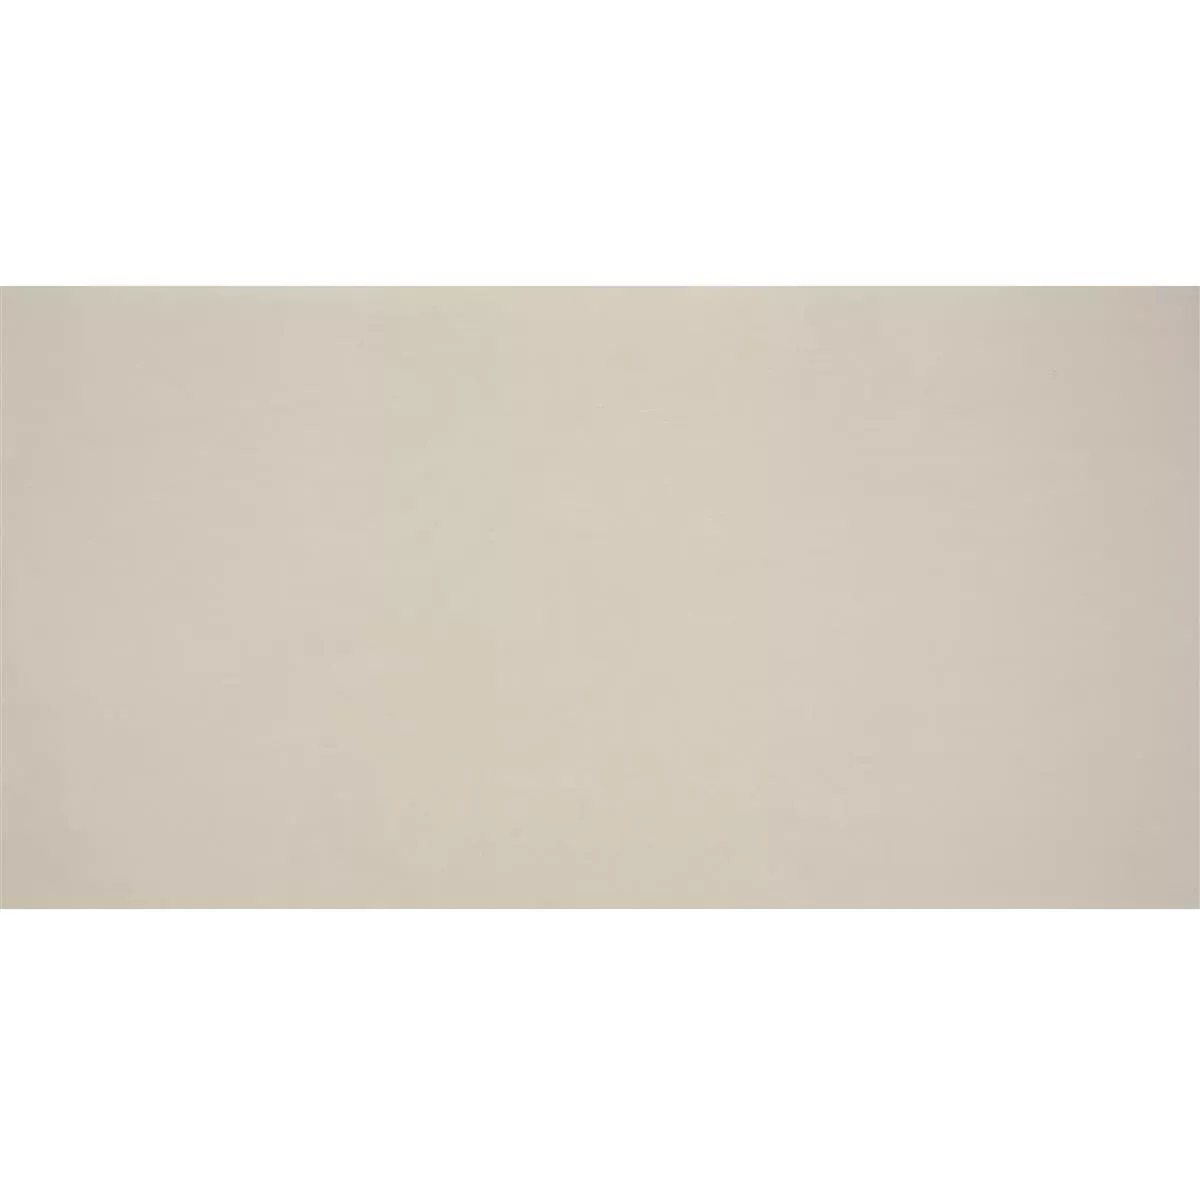 Staklo Zidne Pločice Trend-Vi Supreme Antiquewhite 30x60cm